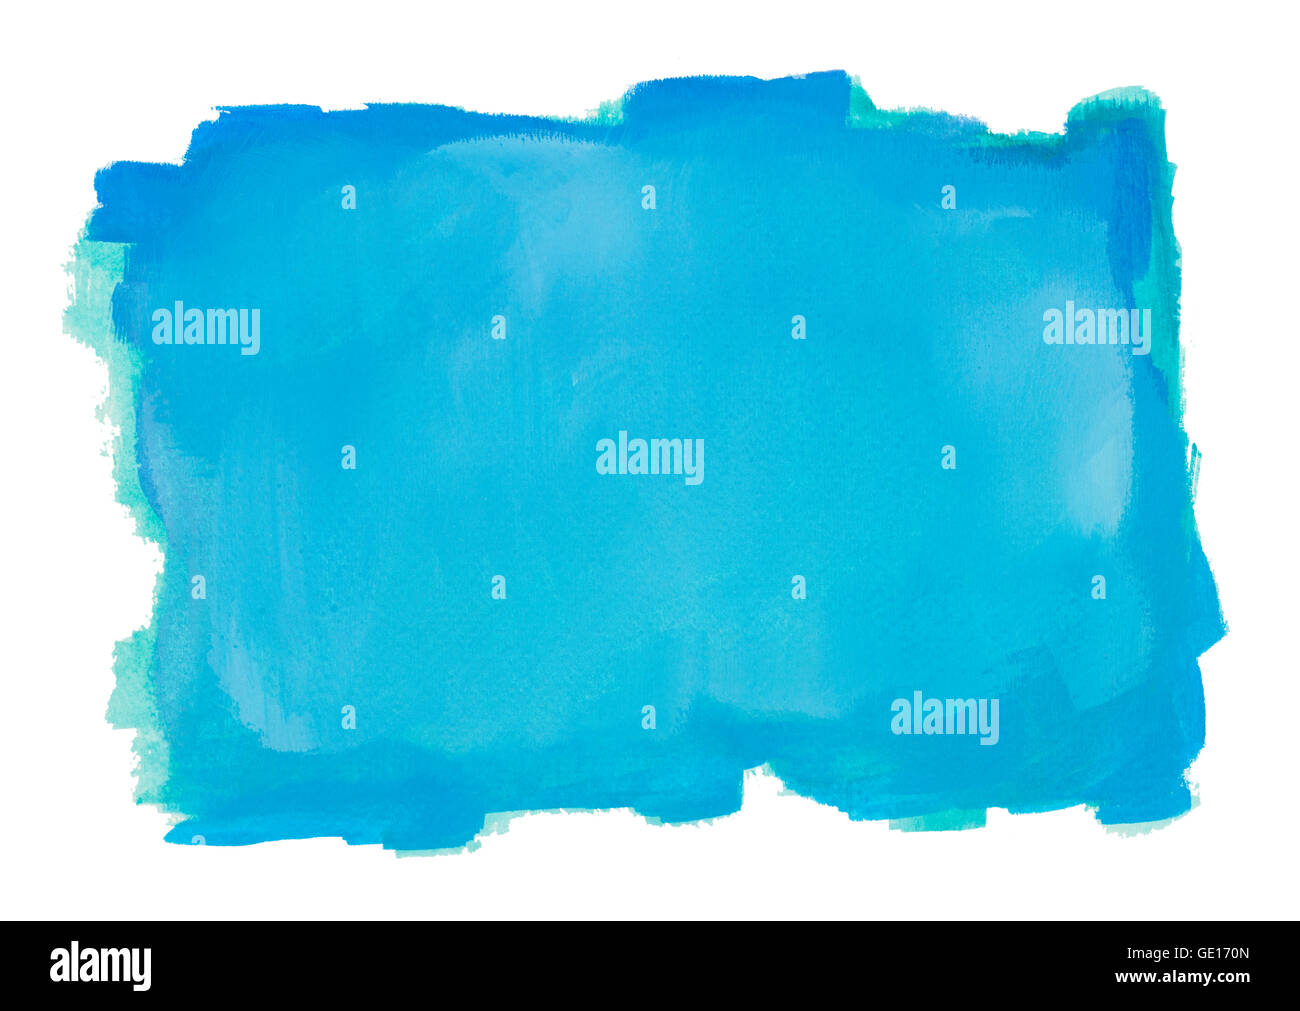 Blauwasser-Hintergrundfarbe mit textfreiraum Isolated on White. Stockfoto